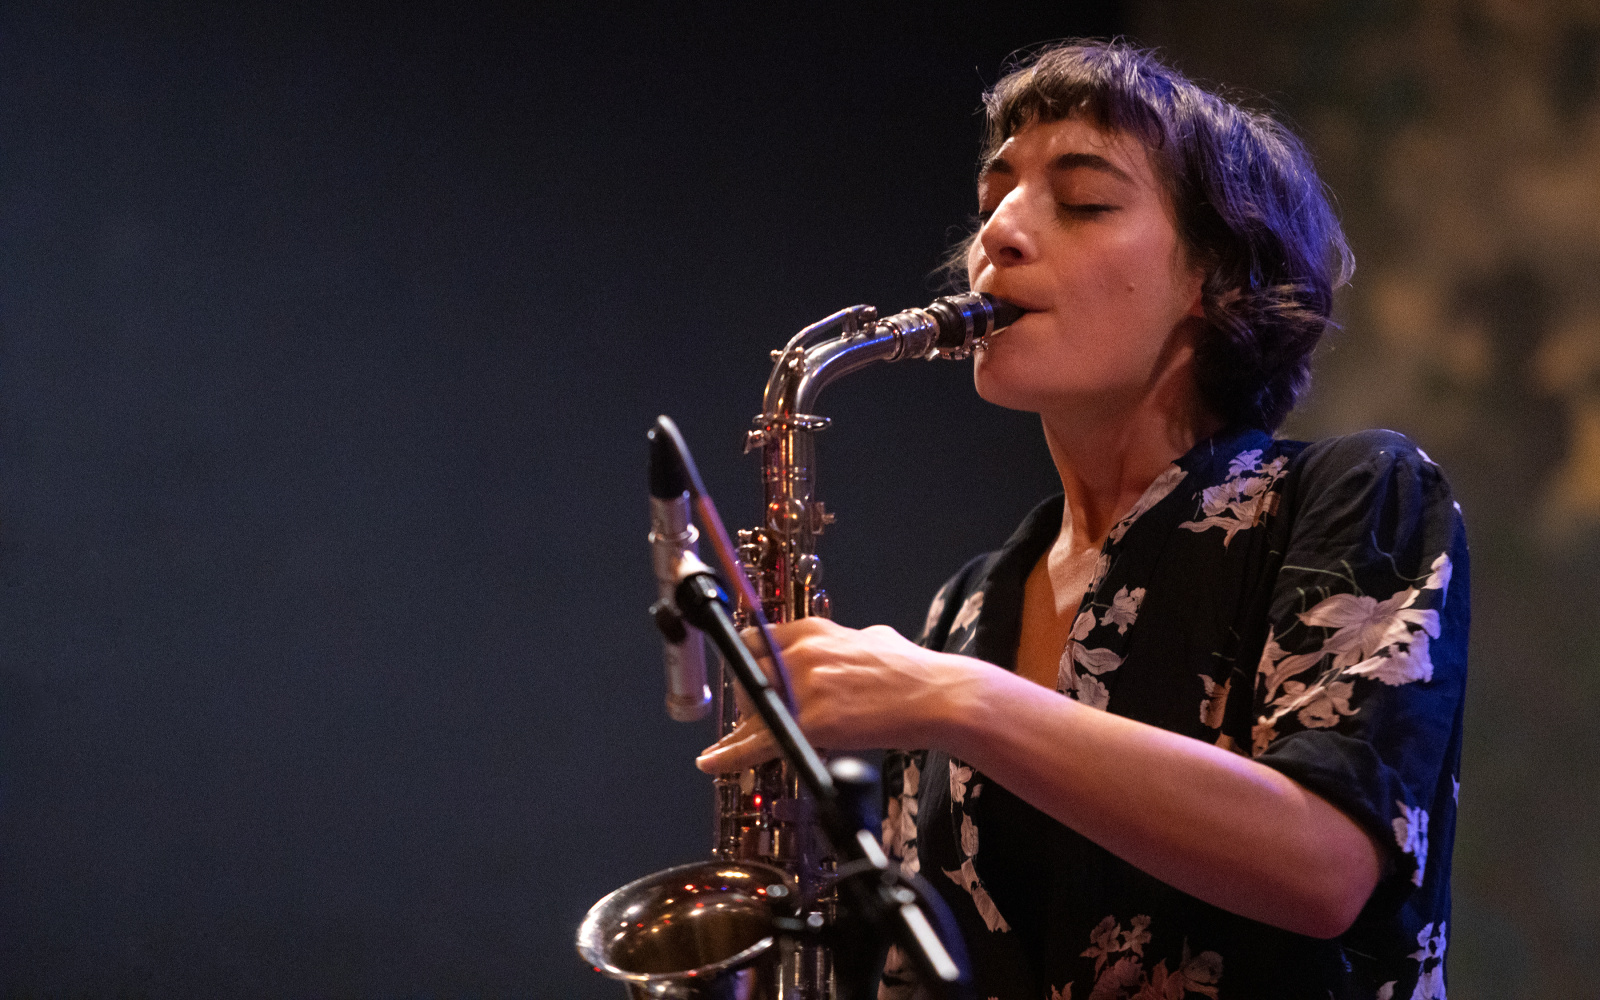 Ein Foto der Musikerin Lea Bertucci, die grade Saxofon spielt.